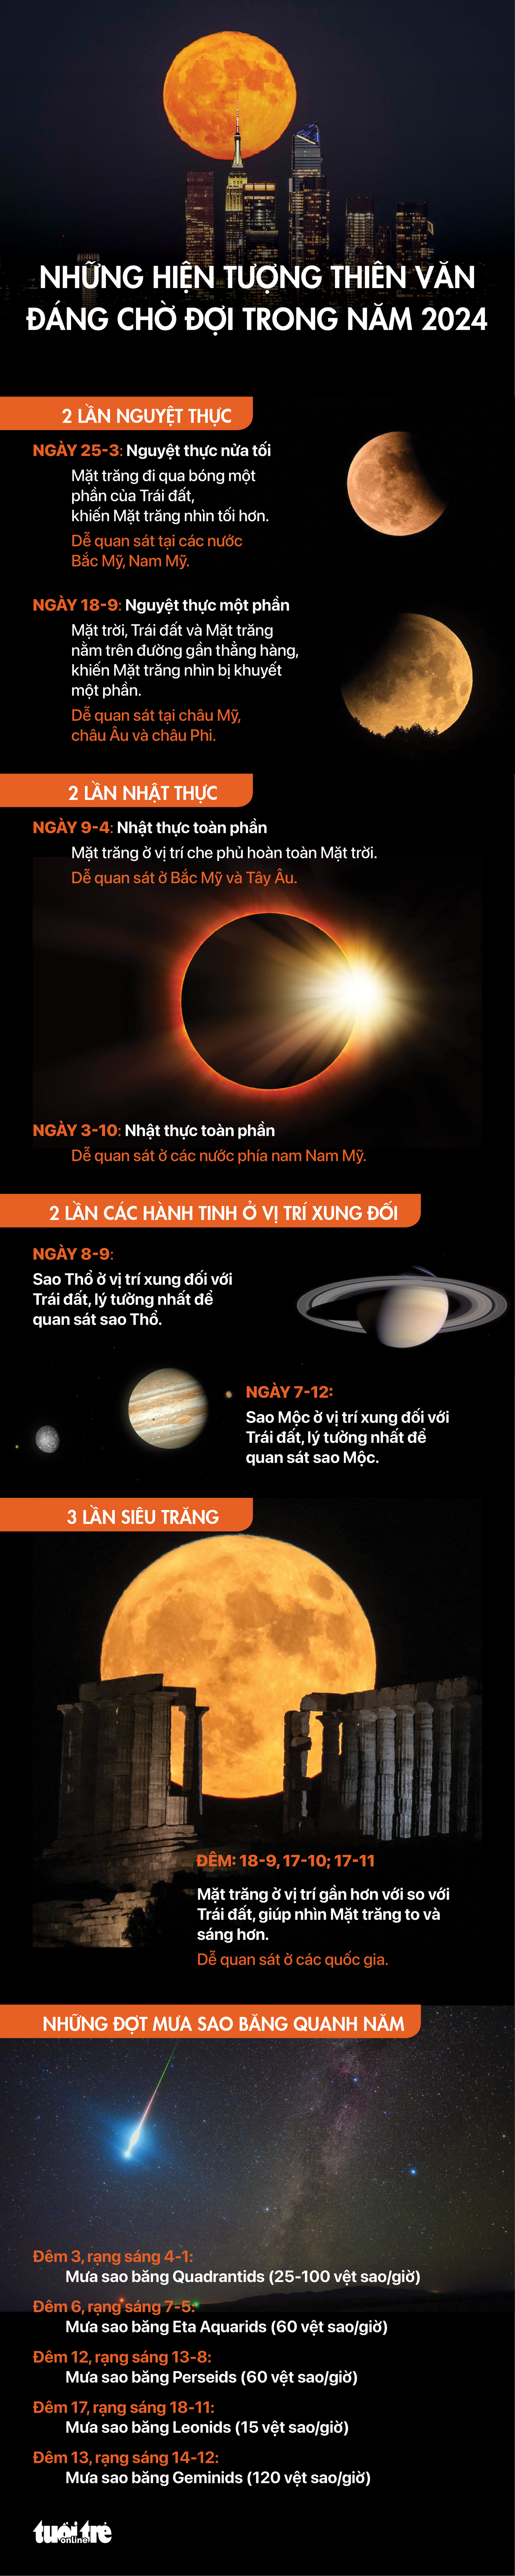 Lịch các sự kiện thiên văn đáng chú ý trong năm 2024 - Đồ họa: NGỌC THÀNH